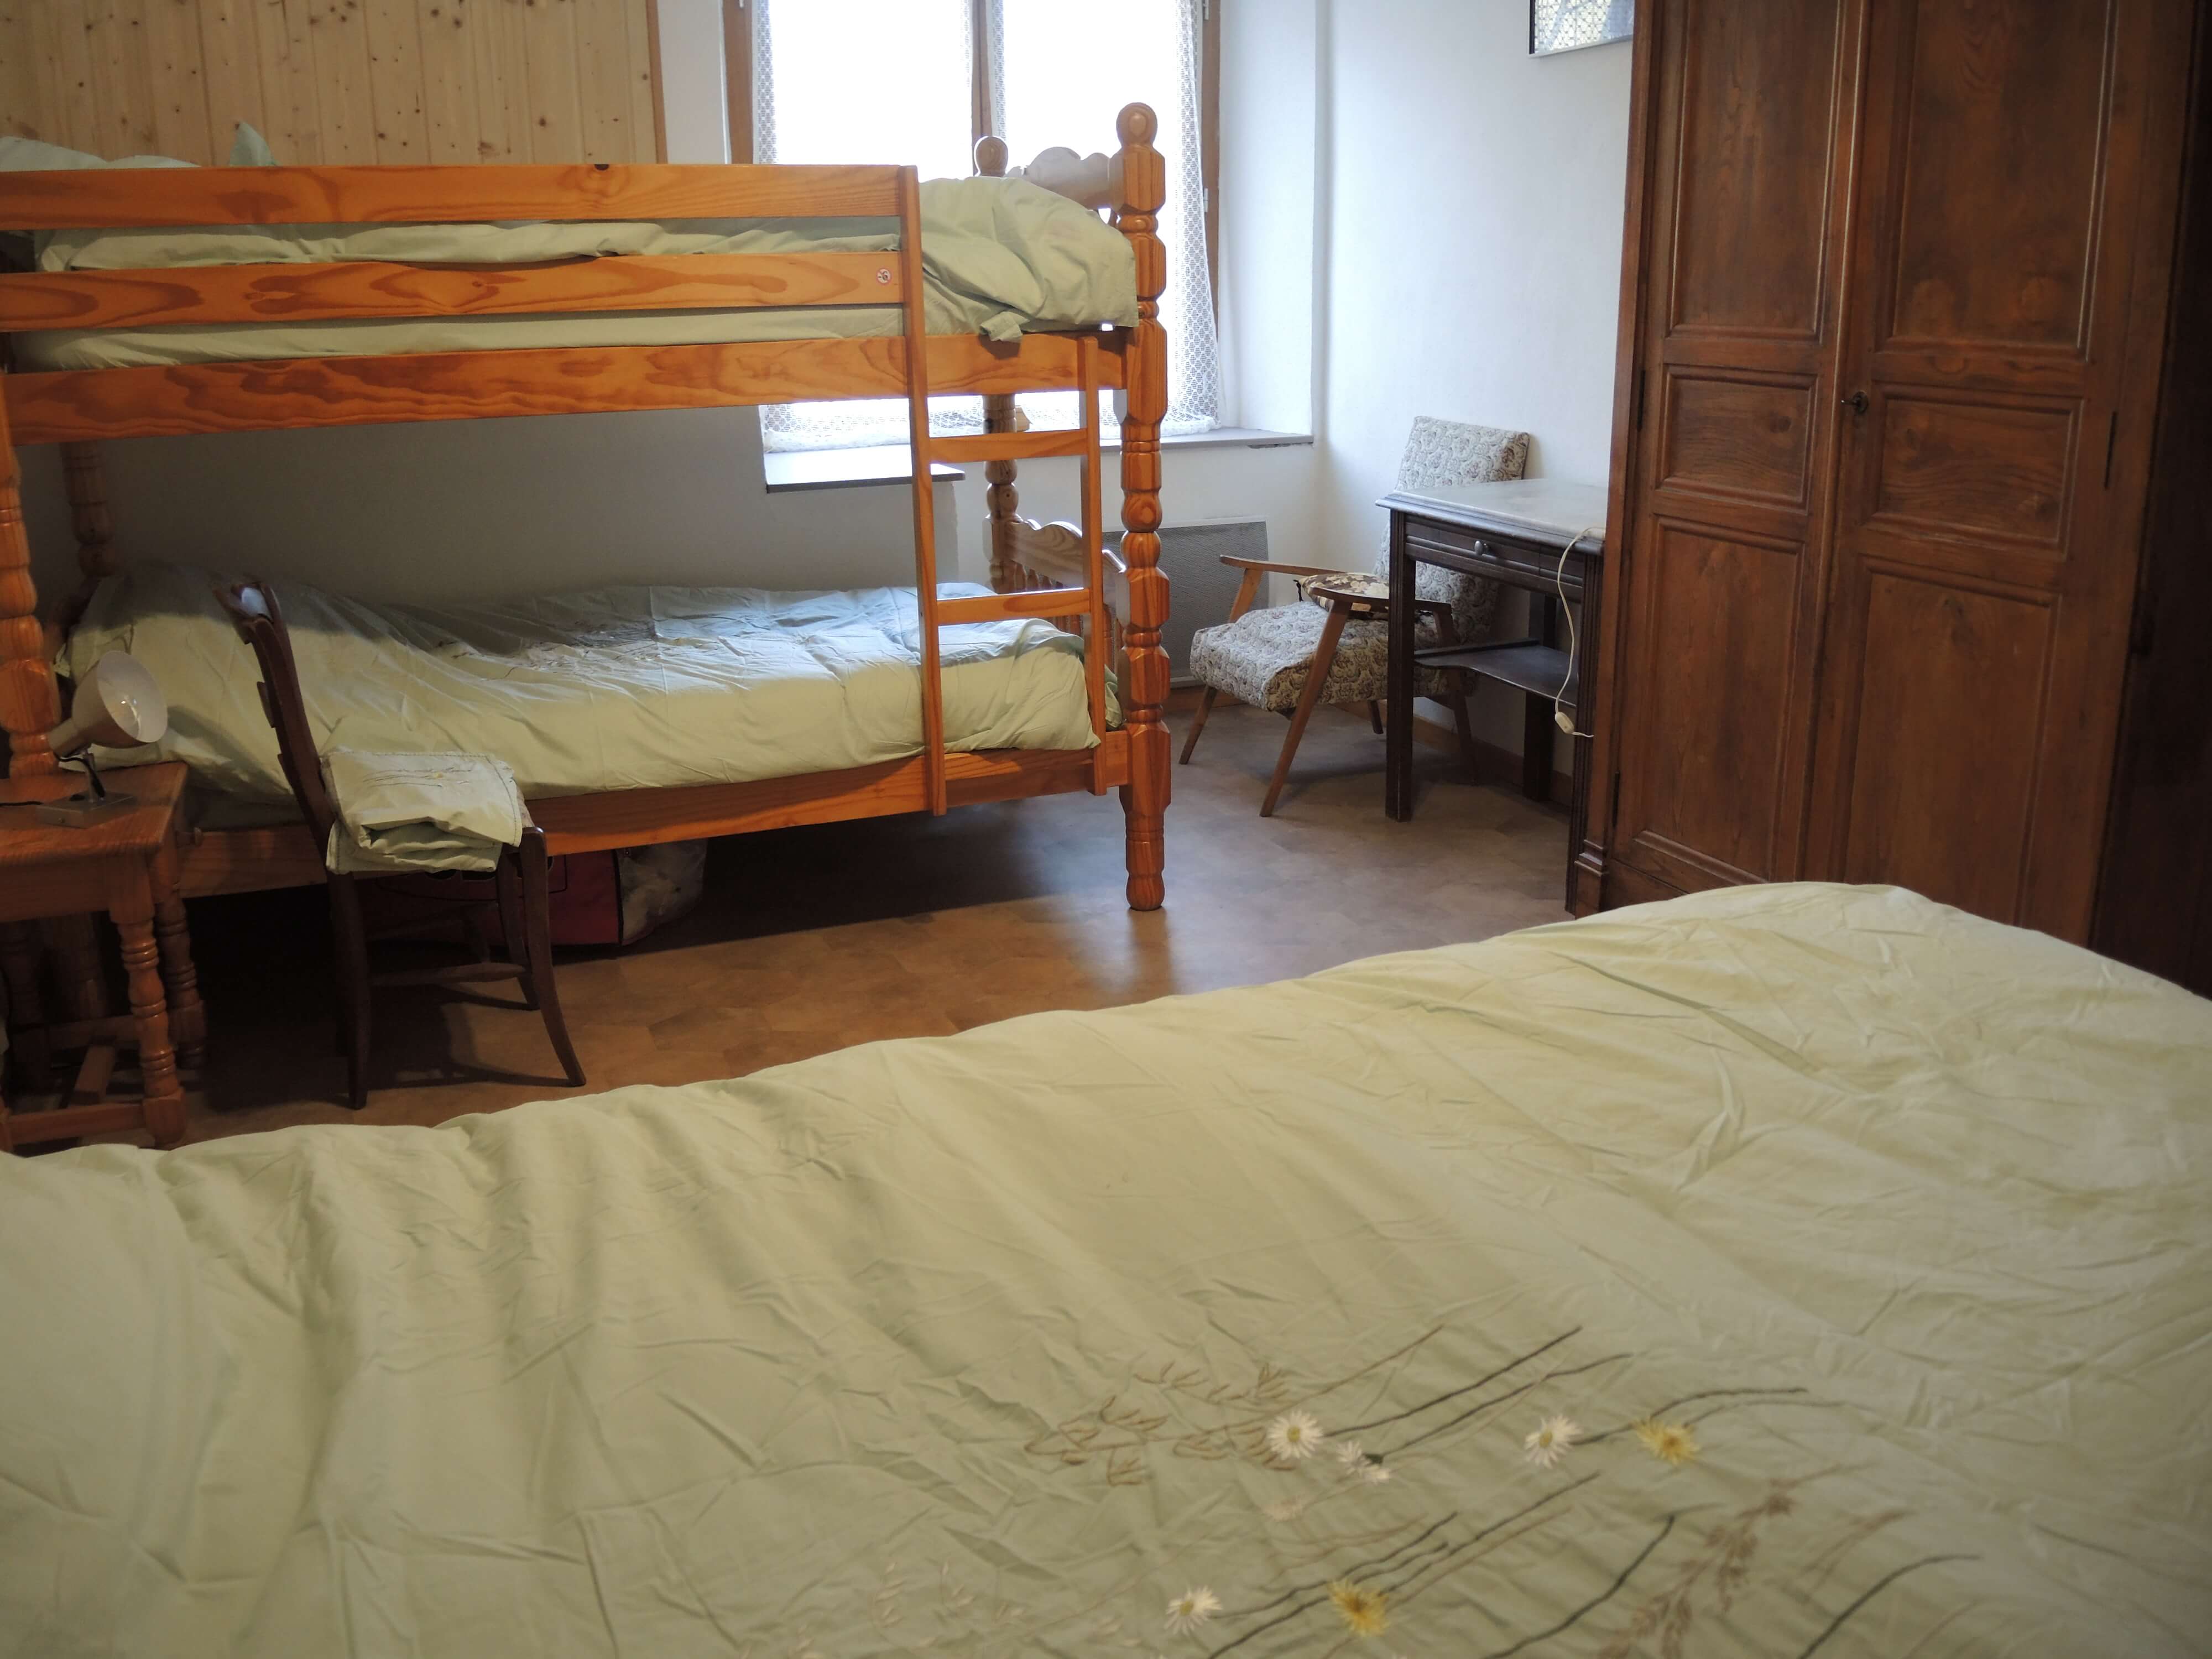 La troisième chambre contient un lit 2 places, ainsi qu'un double lit superposé. Il y a aussi une armoire.